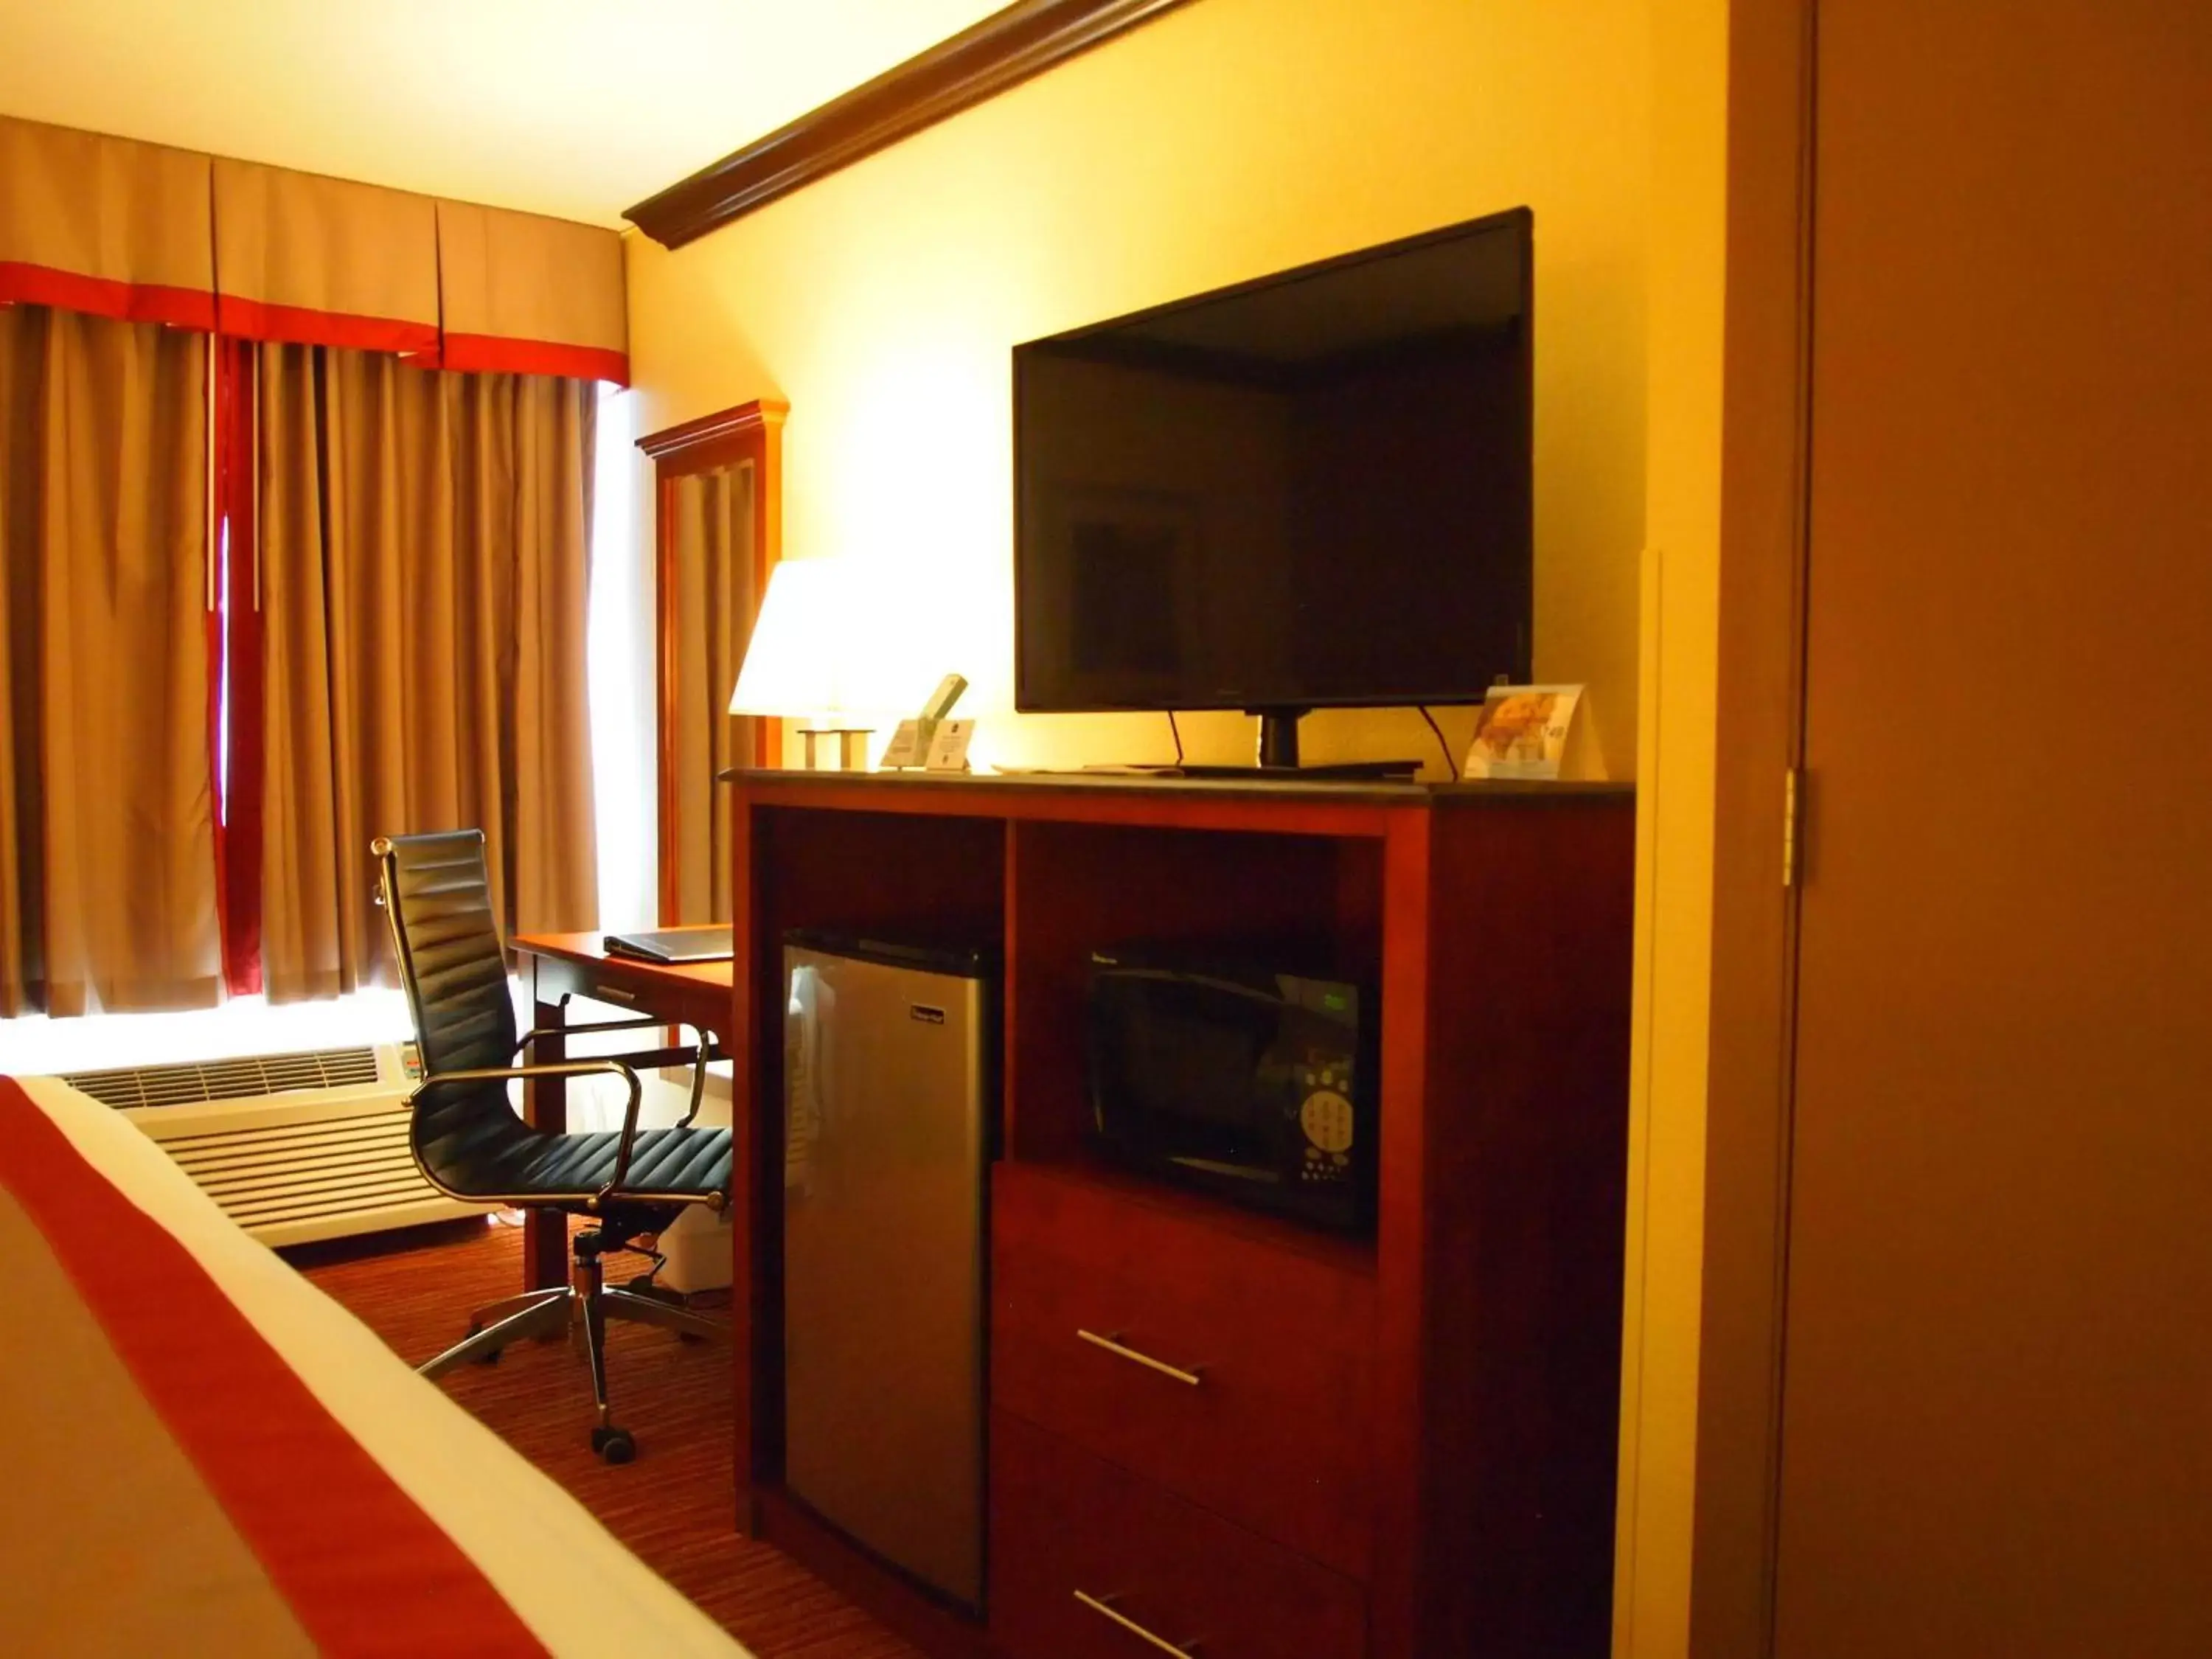 Bedroom, TV/Entertainment Center in Best Western Ft Lauderdale I-95 Inn